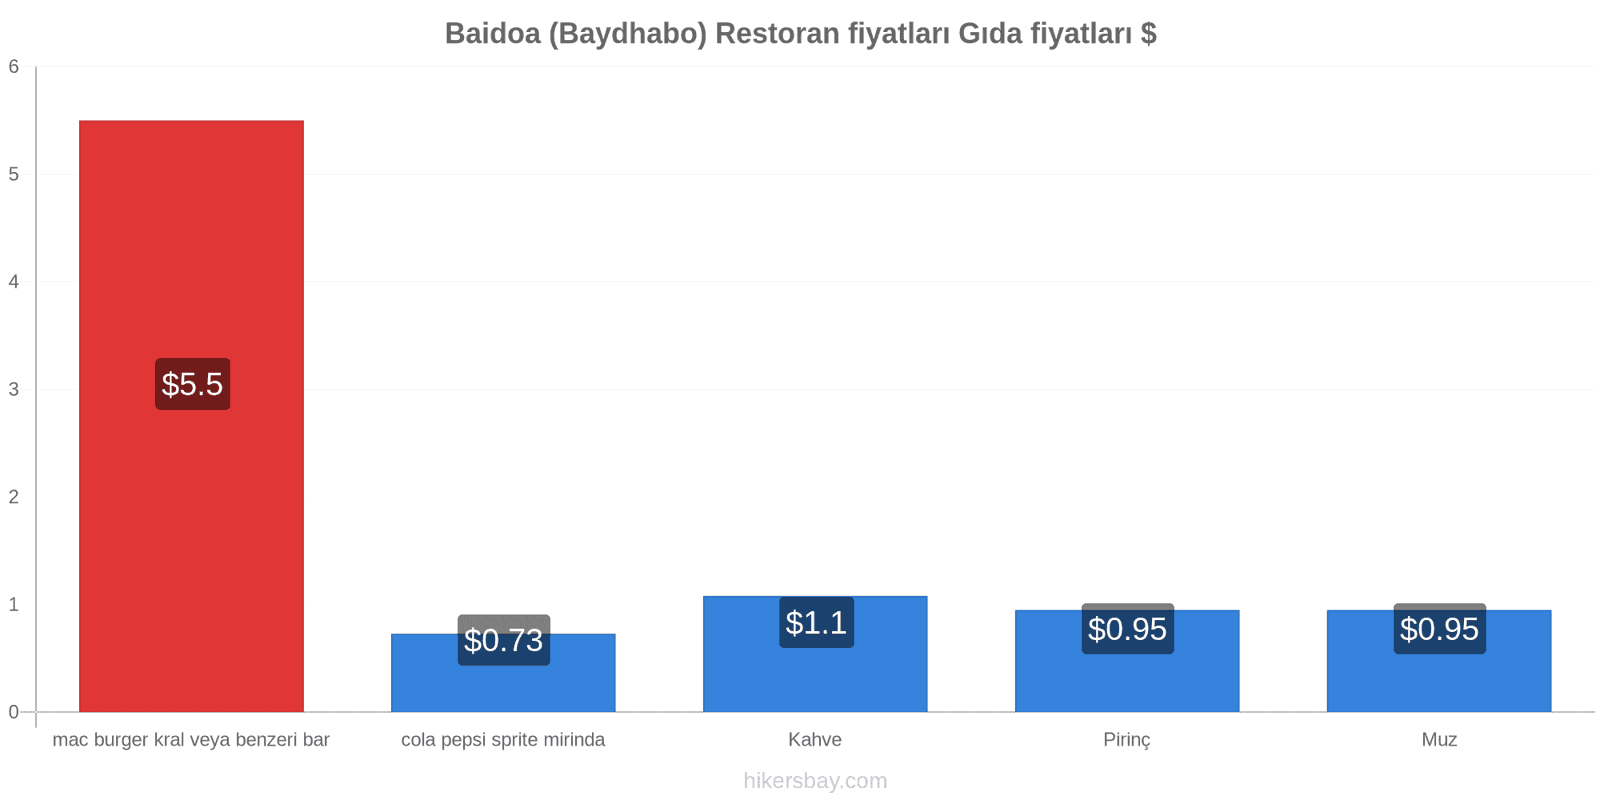 Baidoa (Baydhabo) fiyat değişiklikleri hikersbay.com